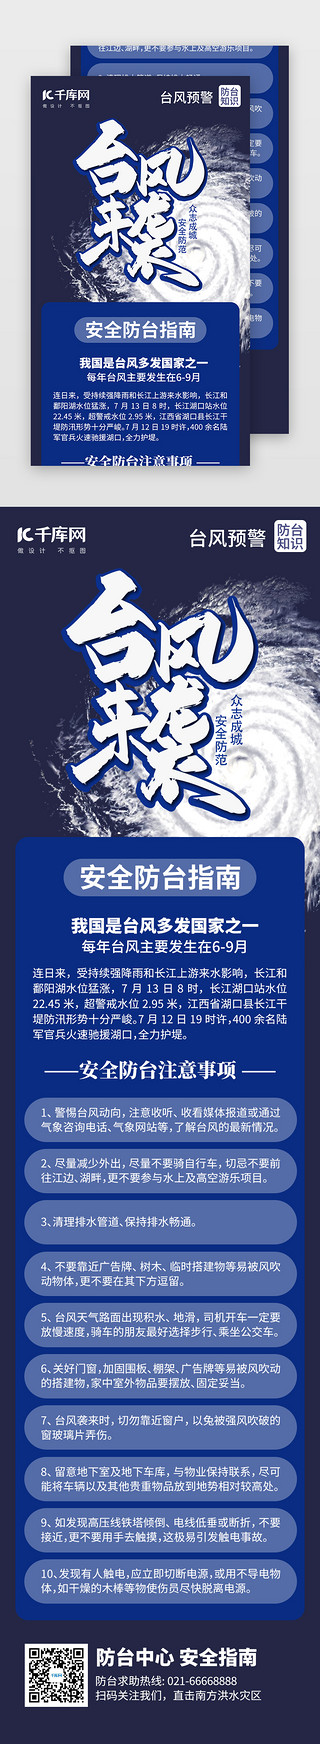 台风预测UI设计素材_台风预警安全指南H5